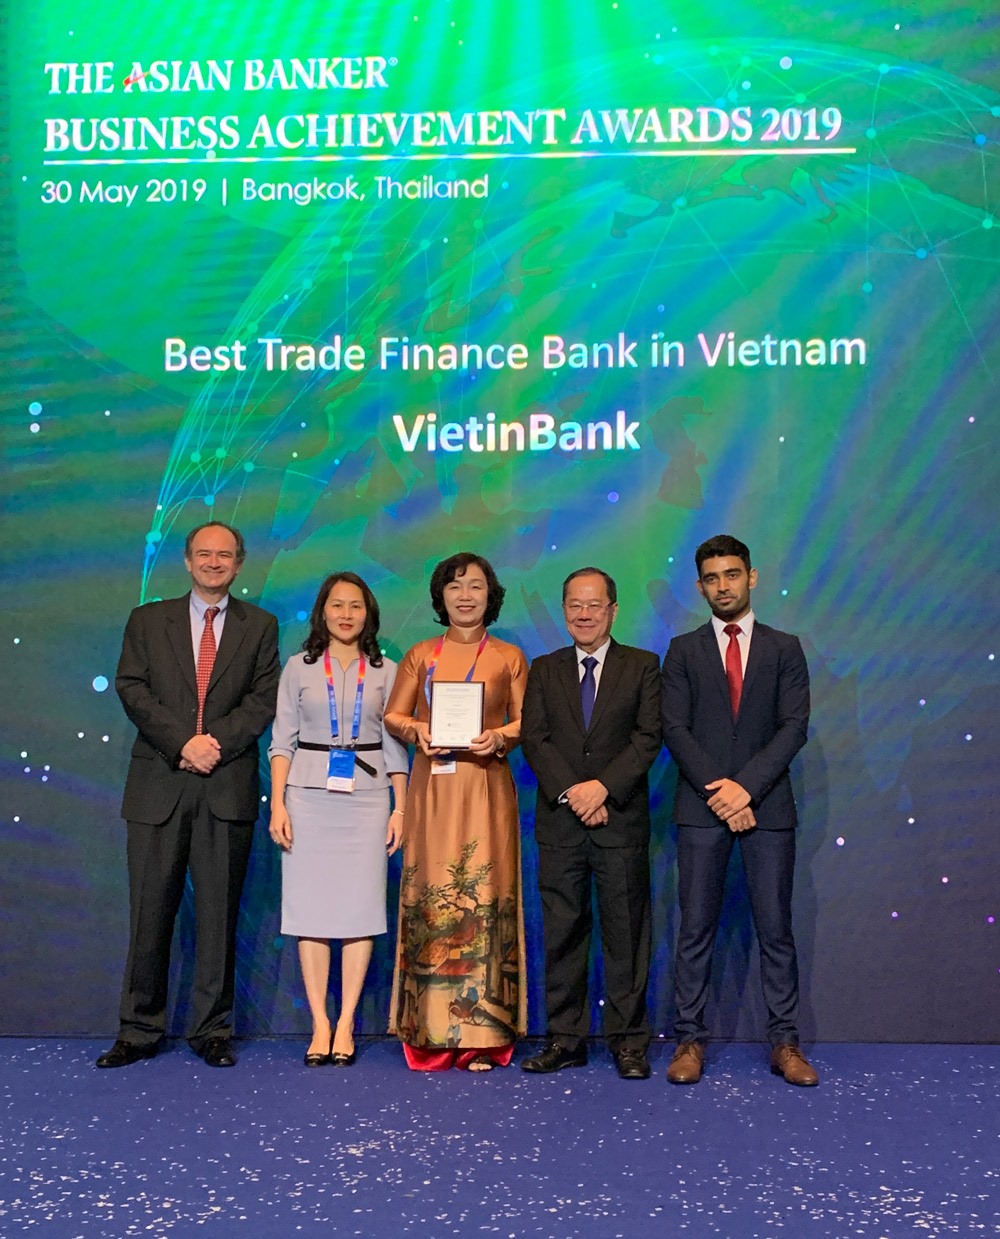 Bà Trần Thị Minh Đức nhận giải thưởng danh giá của The Asian Banker. Ảnh: VietinBank